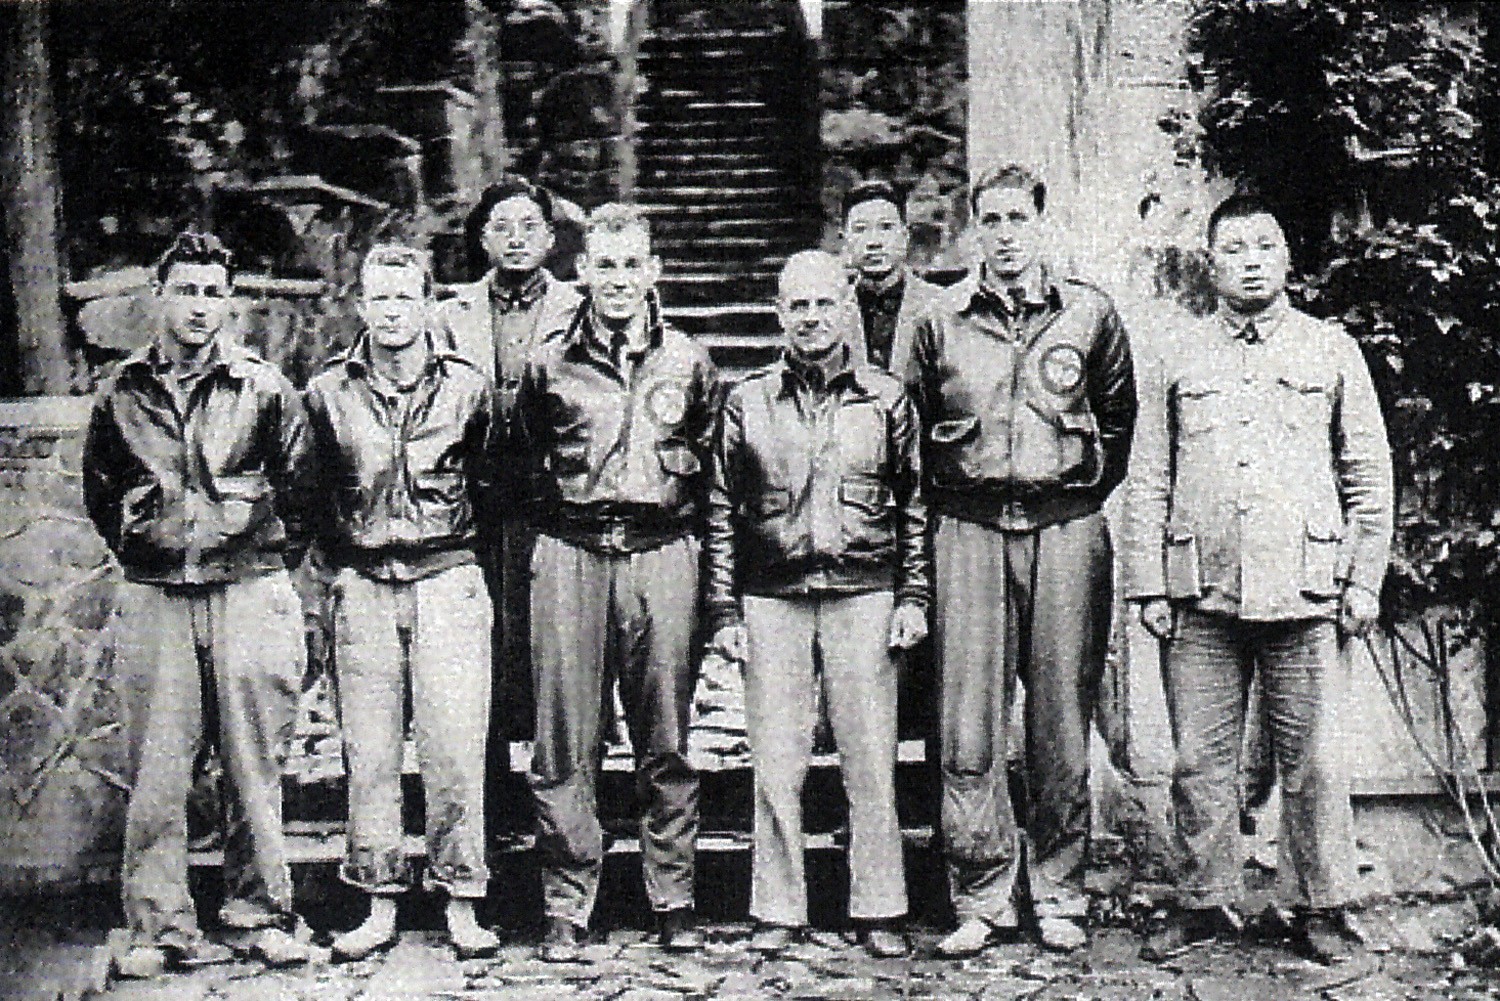 （图10）1942年4月，获救的杜立特一号机组5位飞行员在位于西天目山的浙江行署主任贺扬灵公馆潘庄前合影。一排从左至右为：布拉默中士、伦纳德中士、科尔中尉、杜立特中校、波特中尉。右一为行署主任贺扬灵.jpg